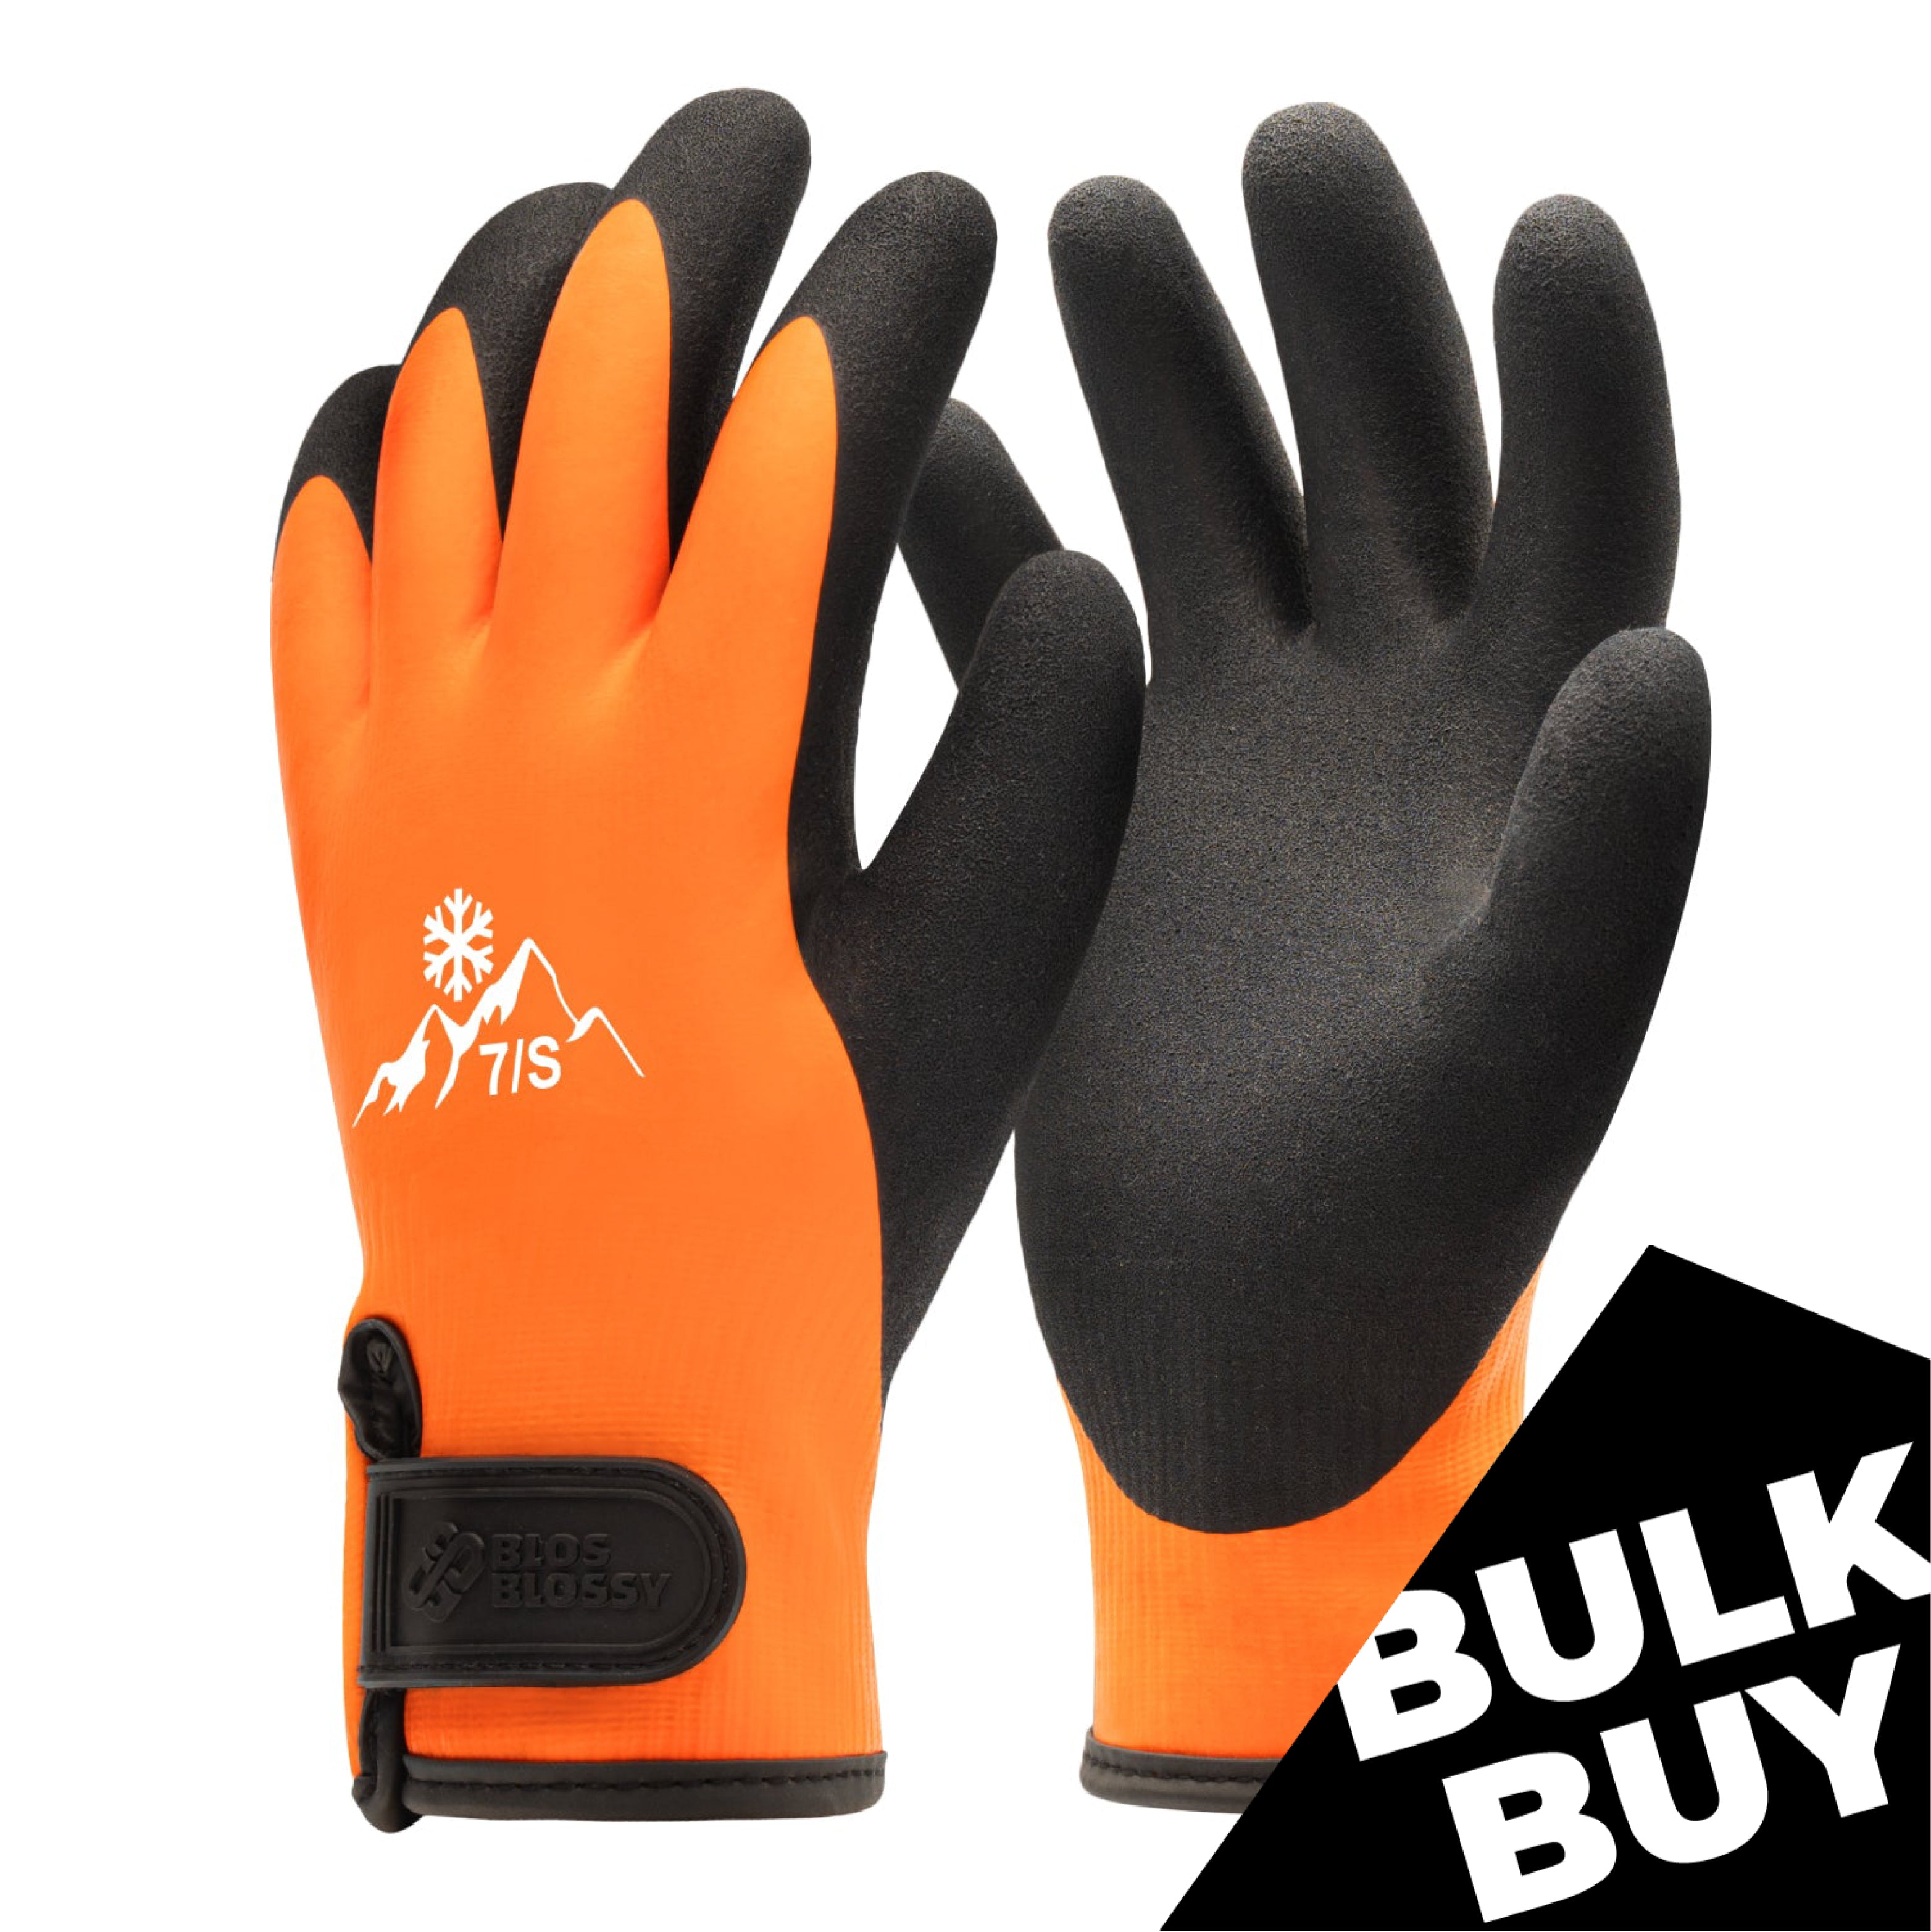 Water Resistant / Waterproof Running Gloves - Mens & Womens - G1